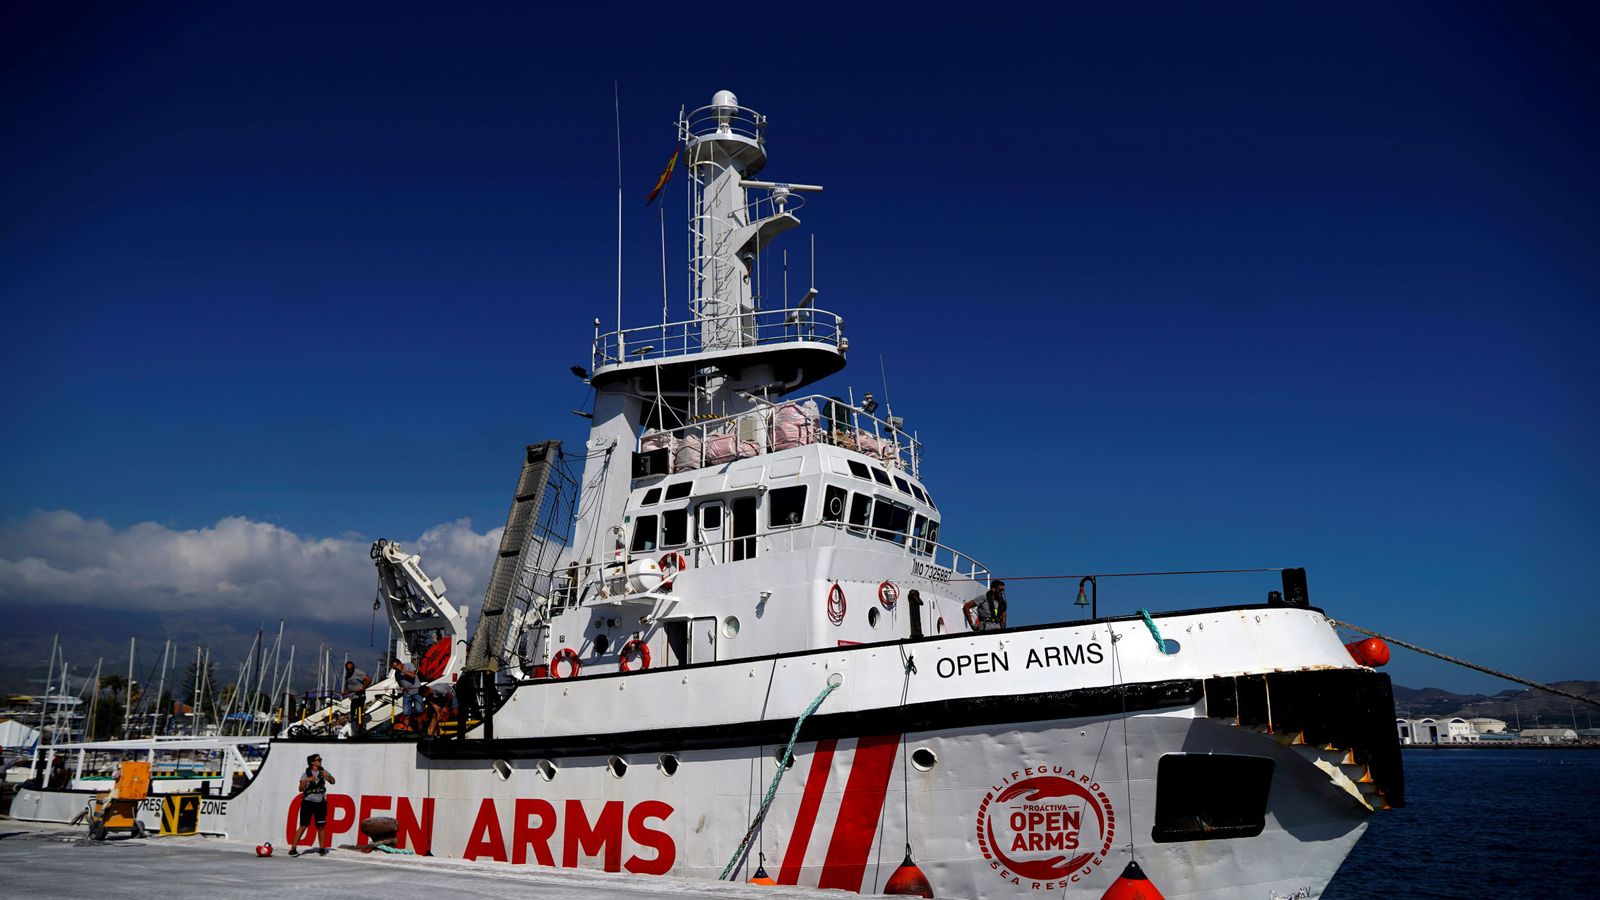 Foto: Foto de archivo de la nave Open Arms. (Reuters)